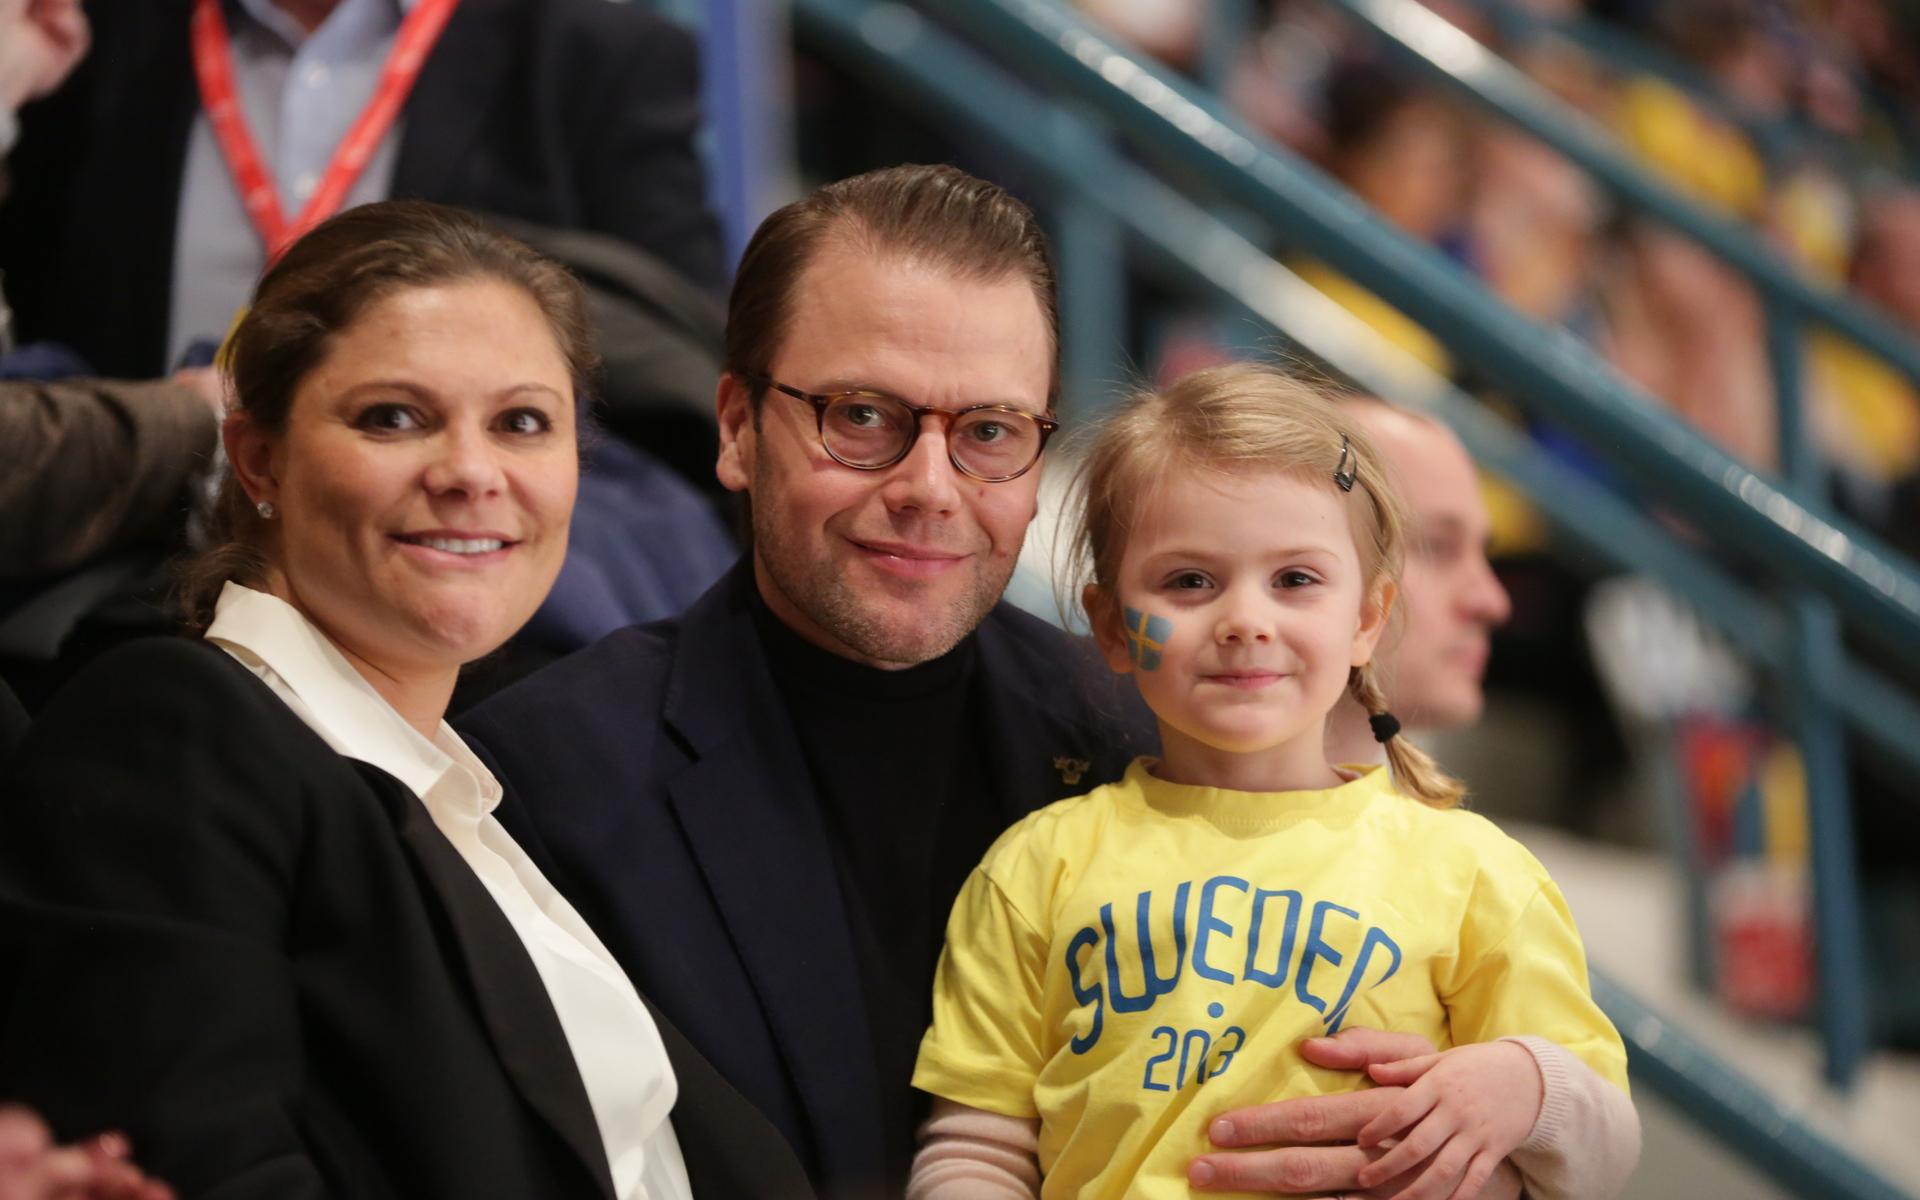 Prinsessan Estelle  följer ofta med mamma och pappa på olika sportevenemang. Här var det en hockeymatch mellan Sverige och Finland 2016. Arkivbild.